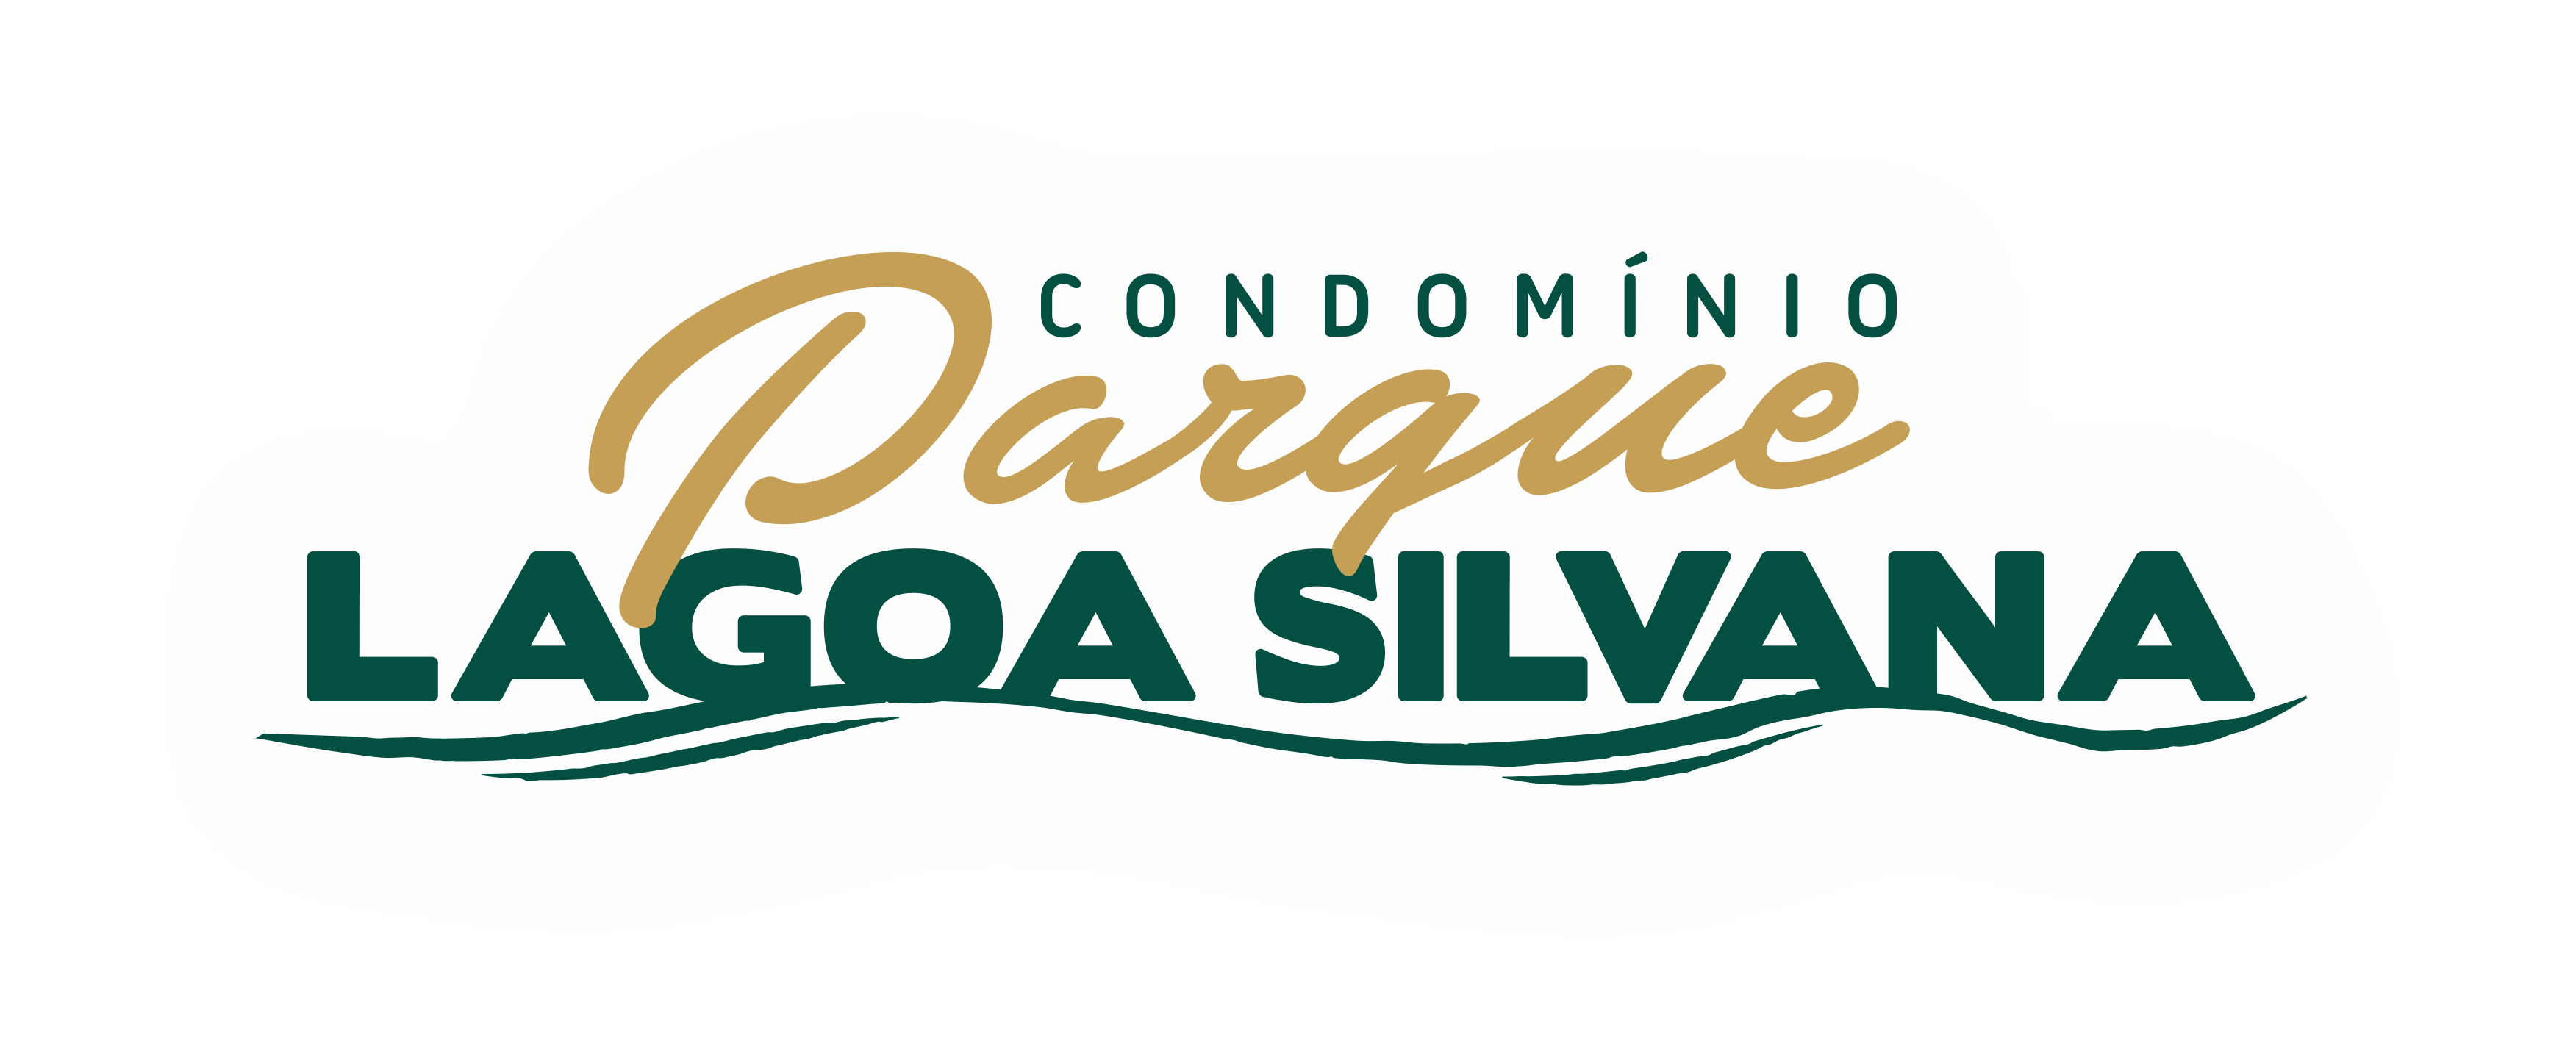 Condomínio Parque Lagoa Silvana